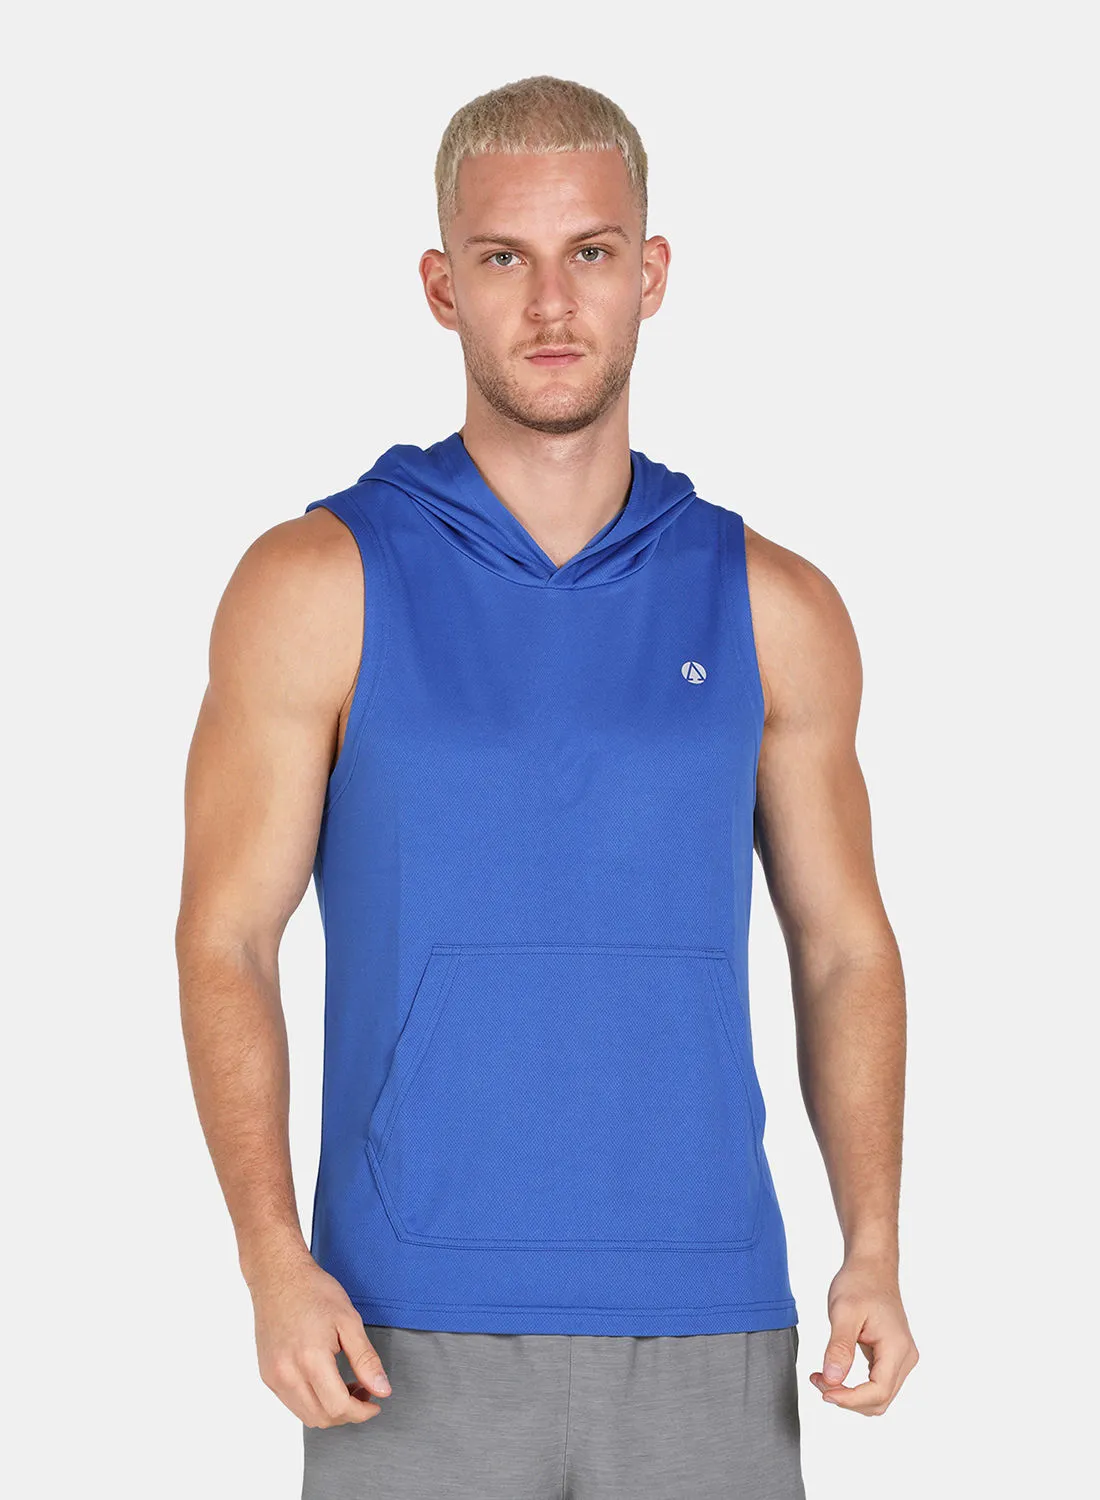 Athletiq Logo Hooded Running Vest Blue